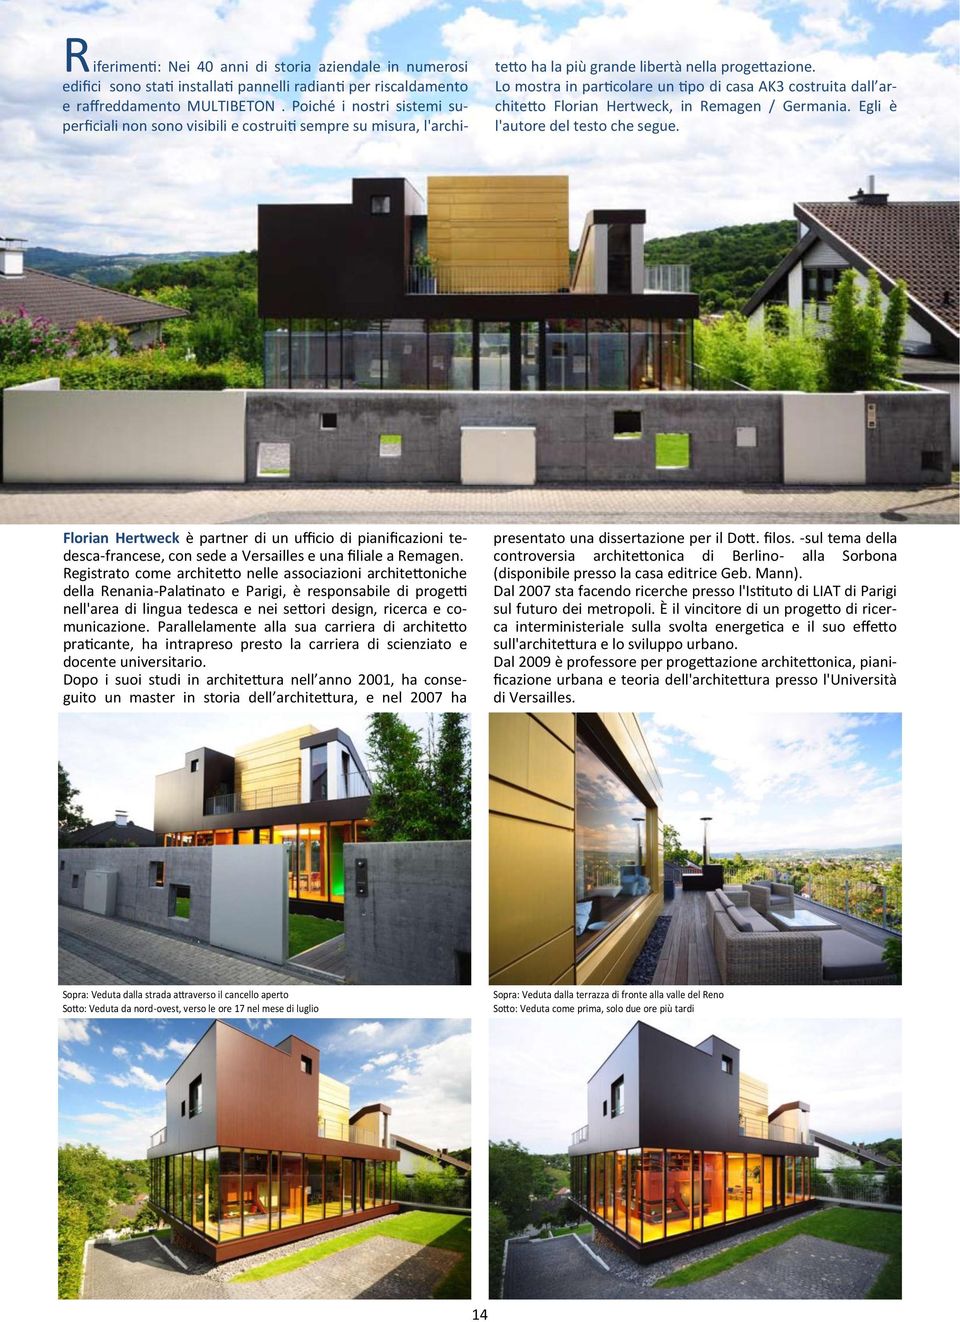 Lo mostra in particolare un tipo di casa AK3 costruita dall architetto Florian Hertweck, in Remagen / Germania. Egli è l'autore del testo che segue.